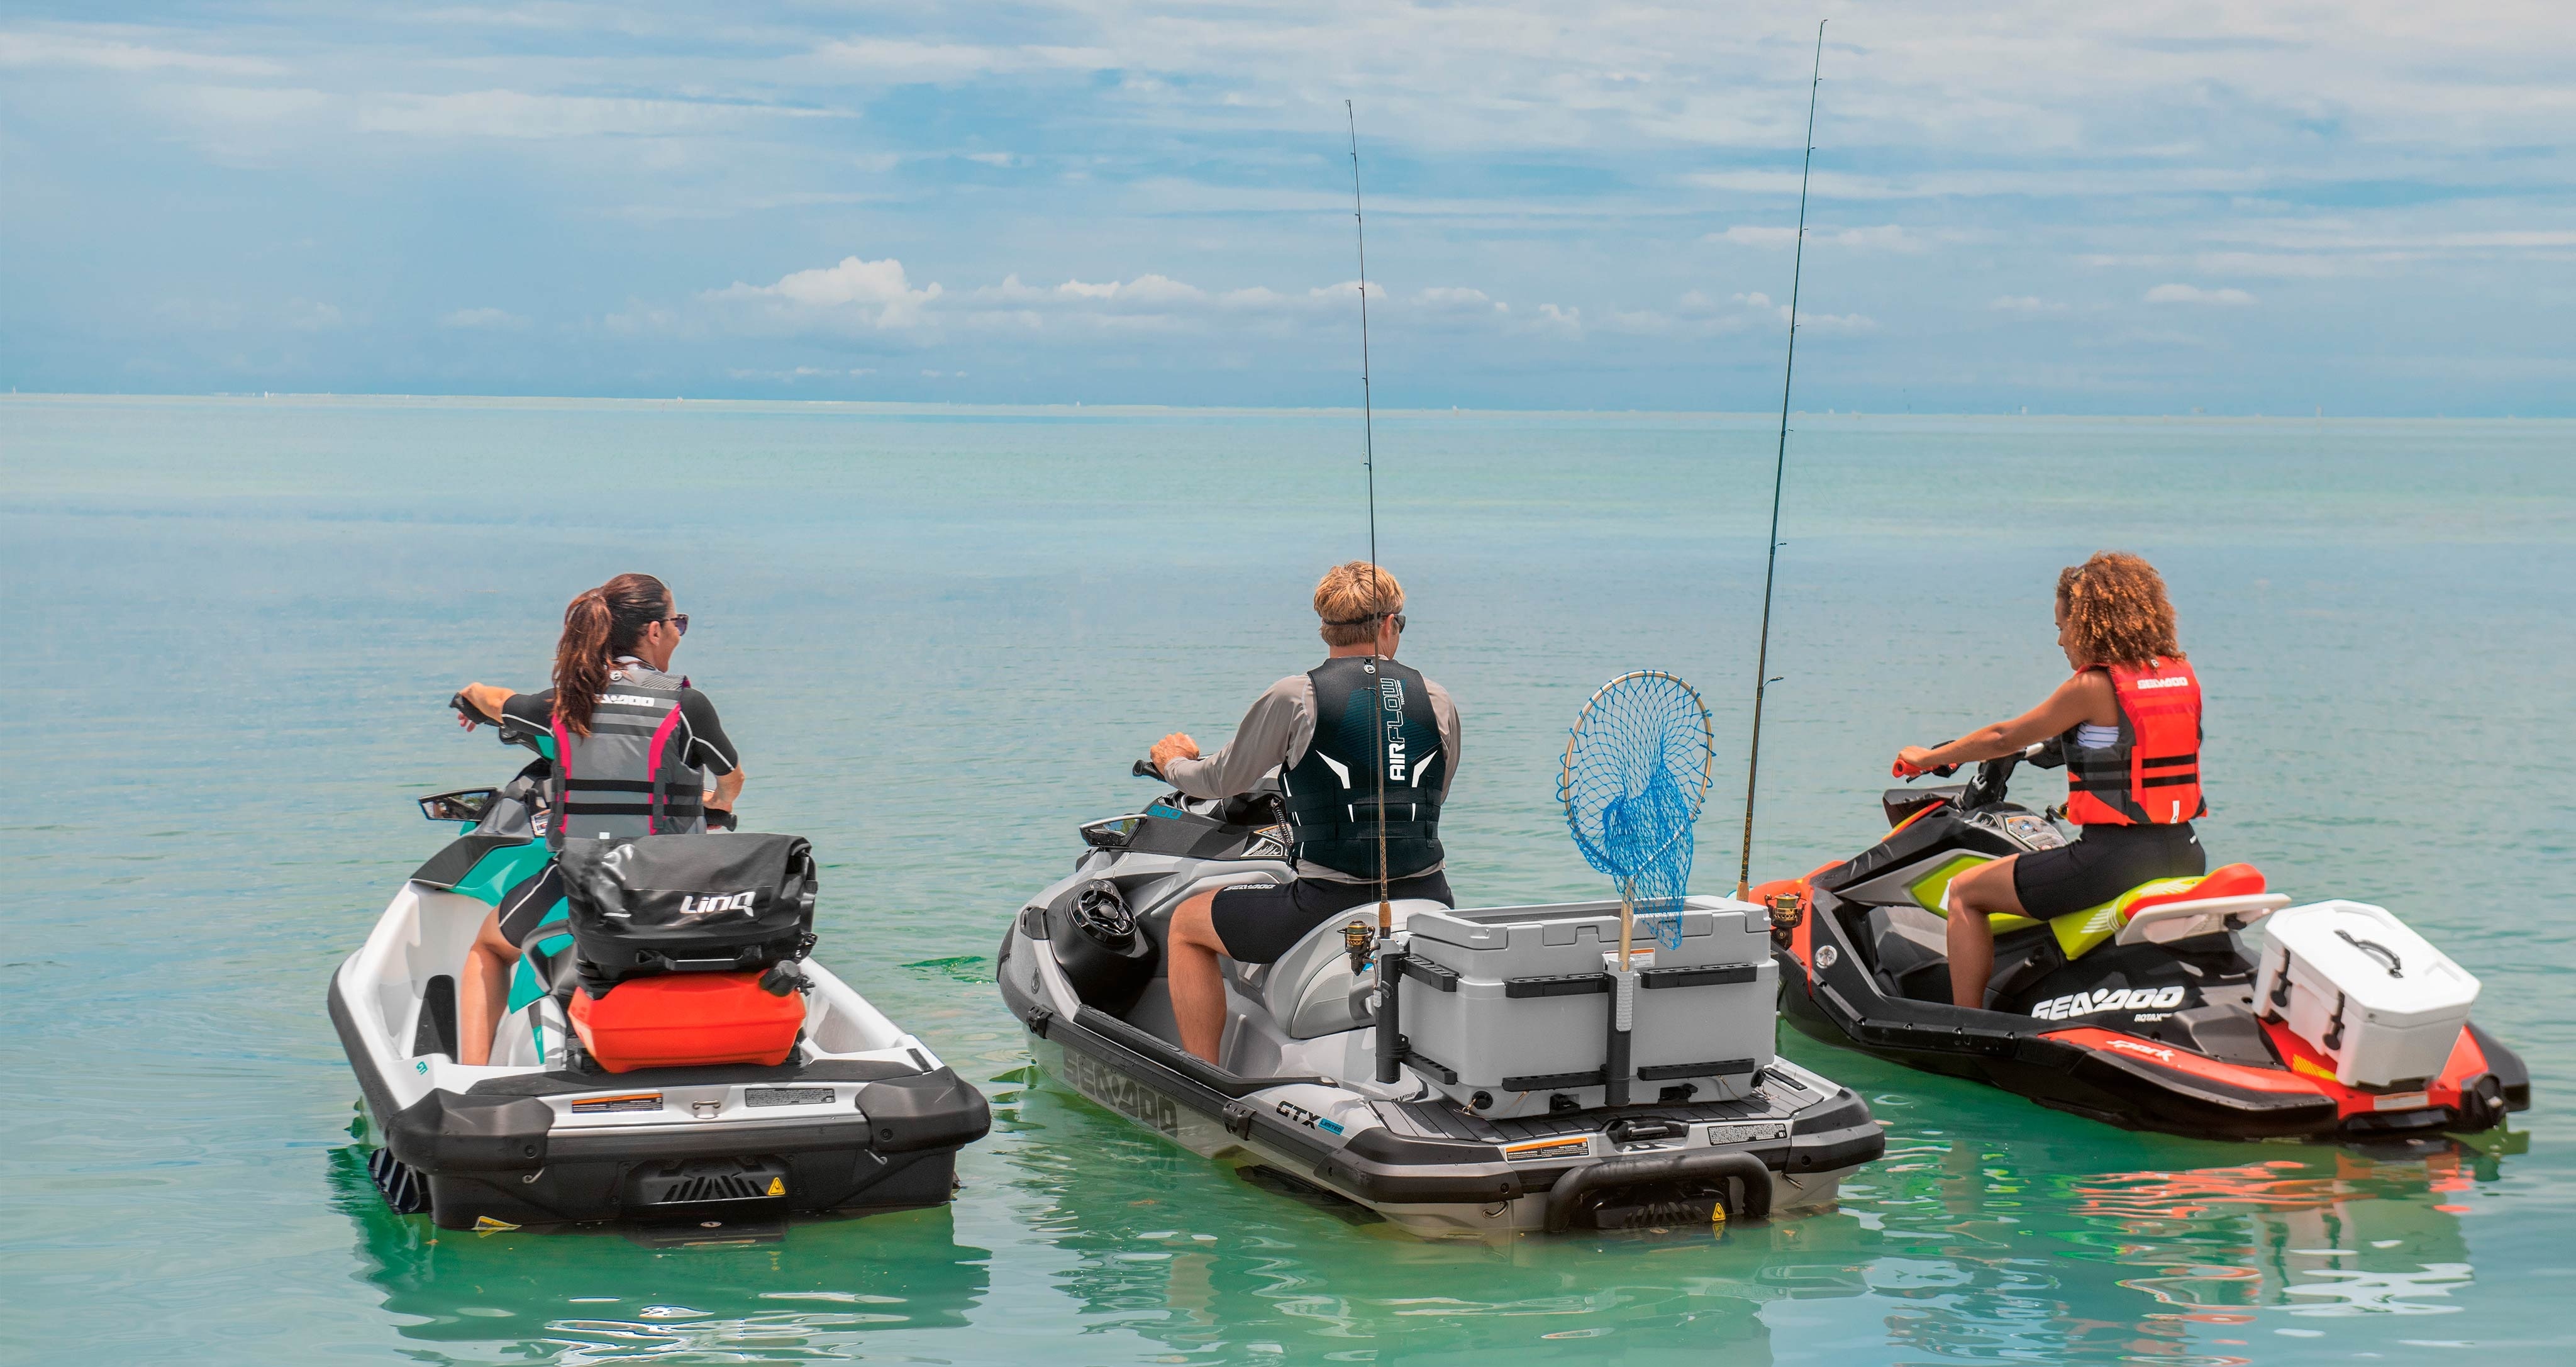 Τρεις φίλοι με εξοπλισμό ψαρέματος οδηγούν το δικό τους σκάφος Sea-doo